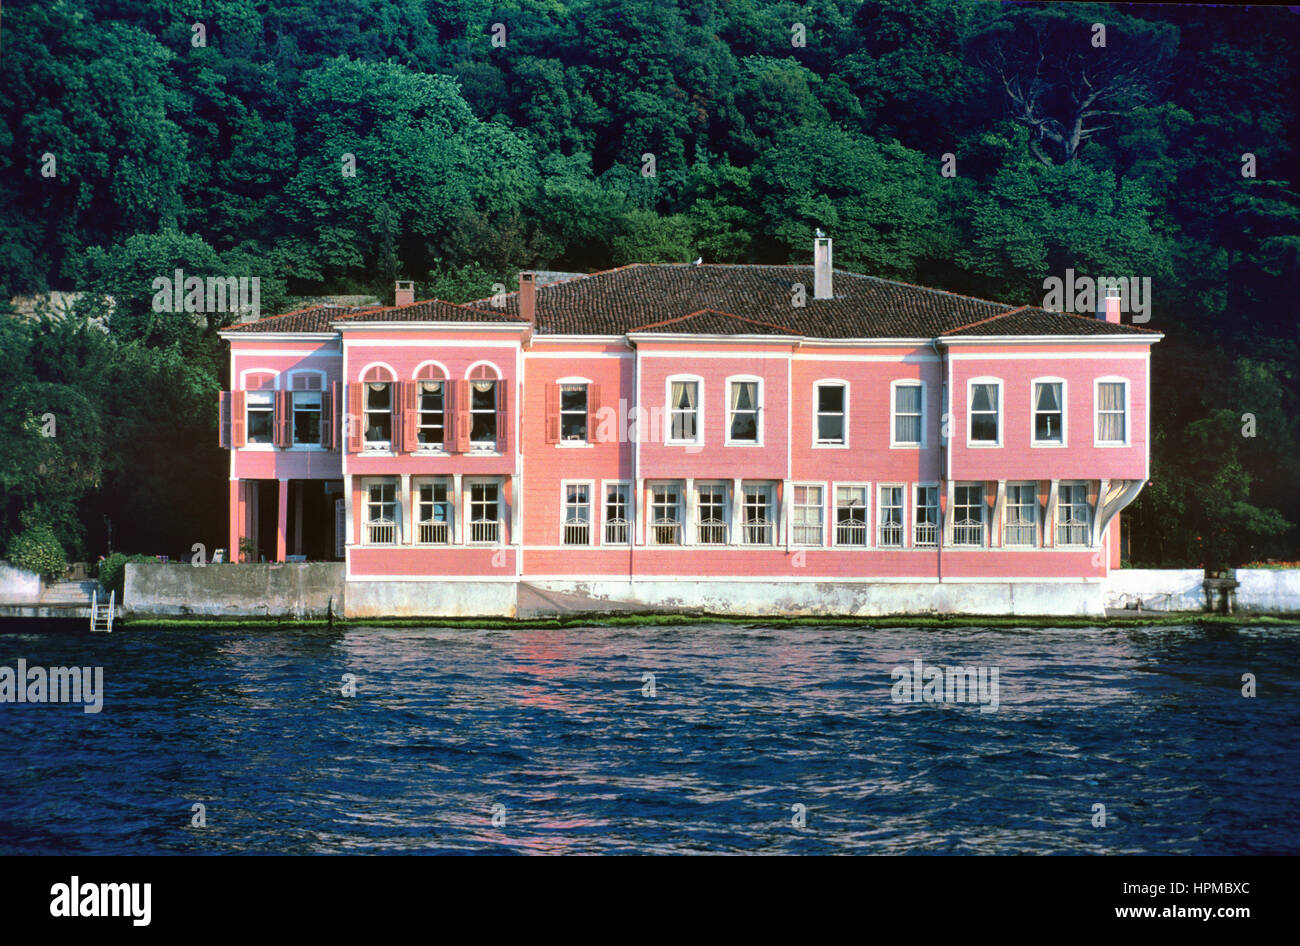 Fethi Ahmet Pasha Yali (c18th), früher auch bekannt als Pink Yali, einer osmanischen Türkisch hölzerne Waterfront Villa am asiatischen Ufer des Bosporus oder der Bosporus-Meerenge-Istanbul-Türkei Stockfoto